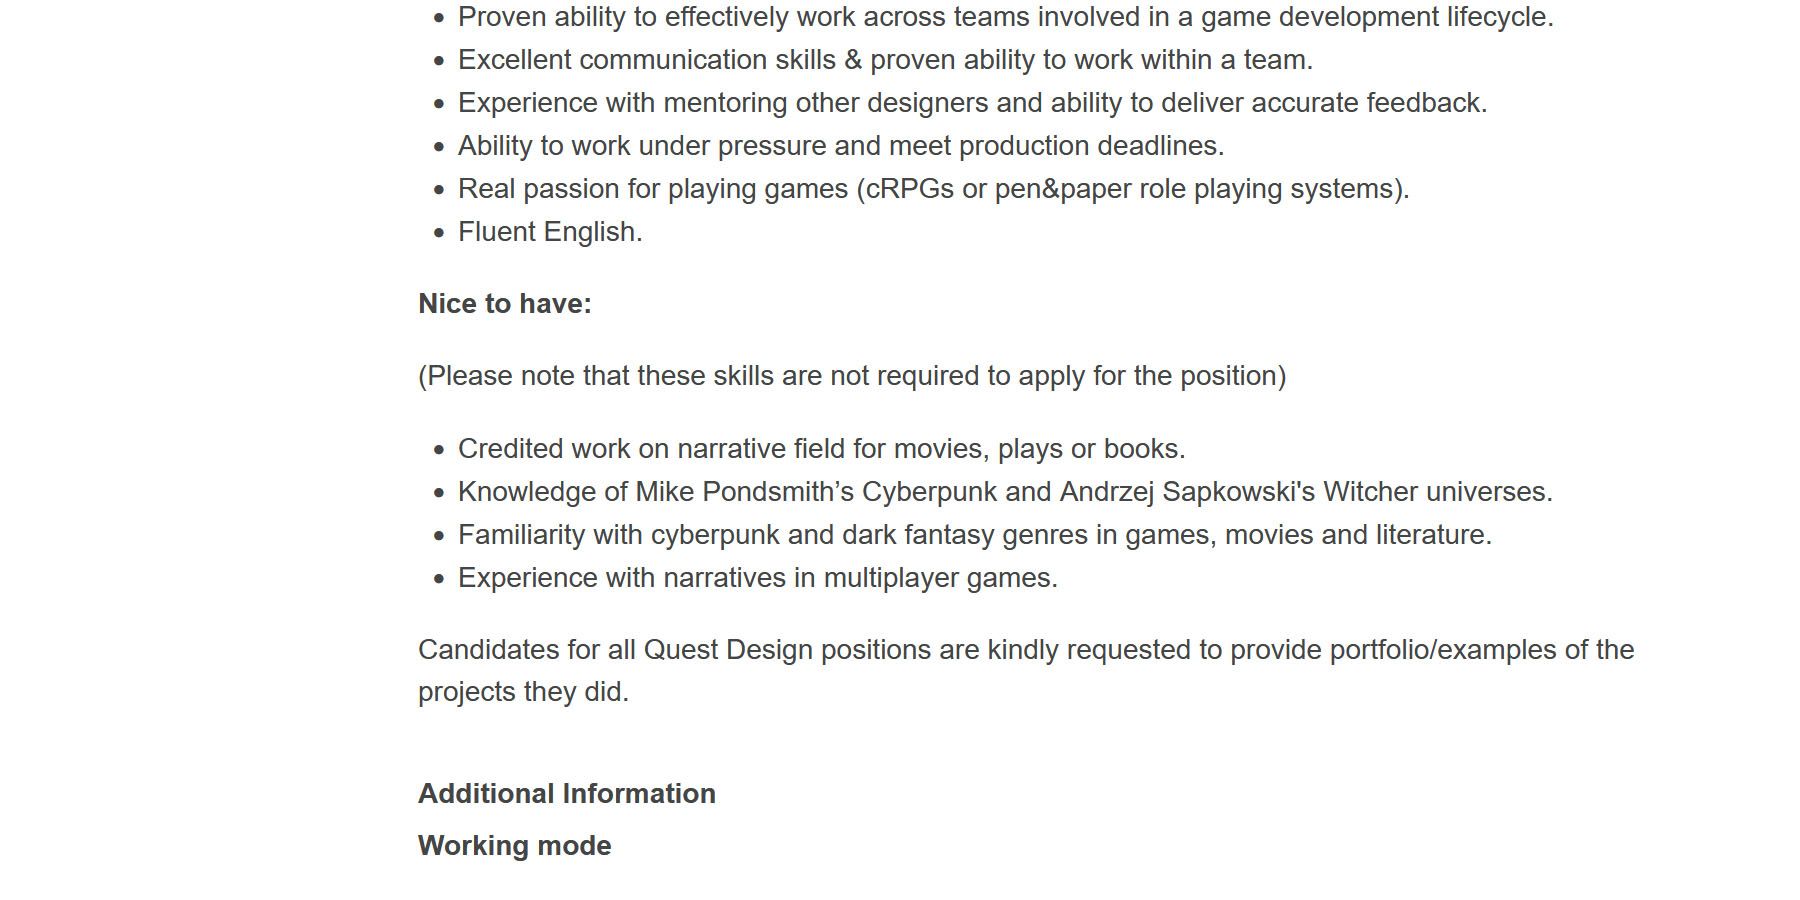 A screenshot of a recent job listing for a Senior Quest designer at CD Projekt Red.